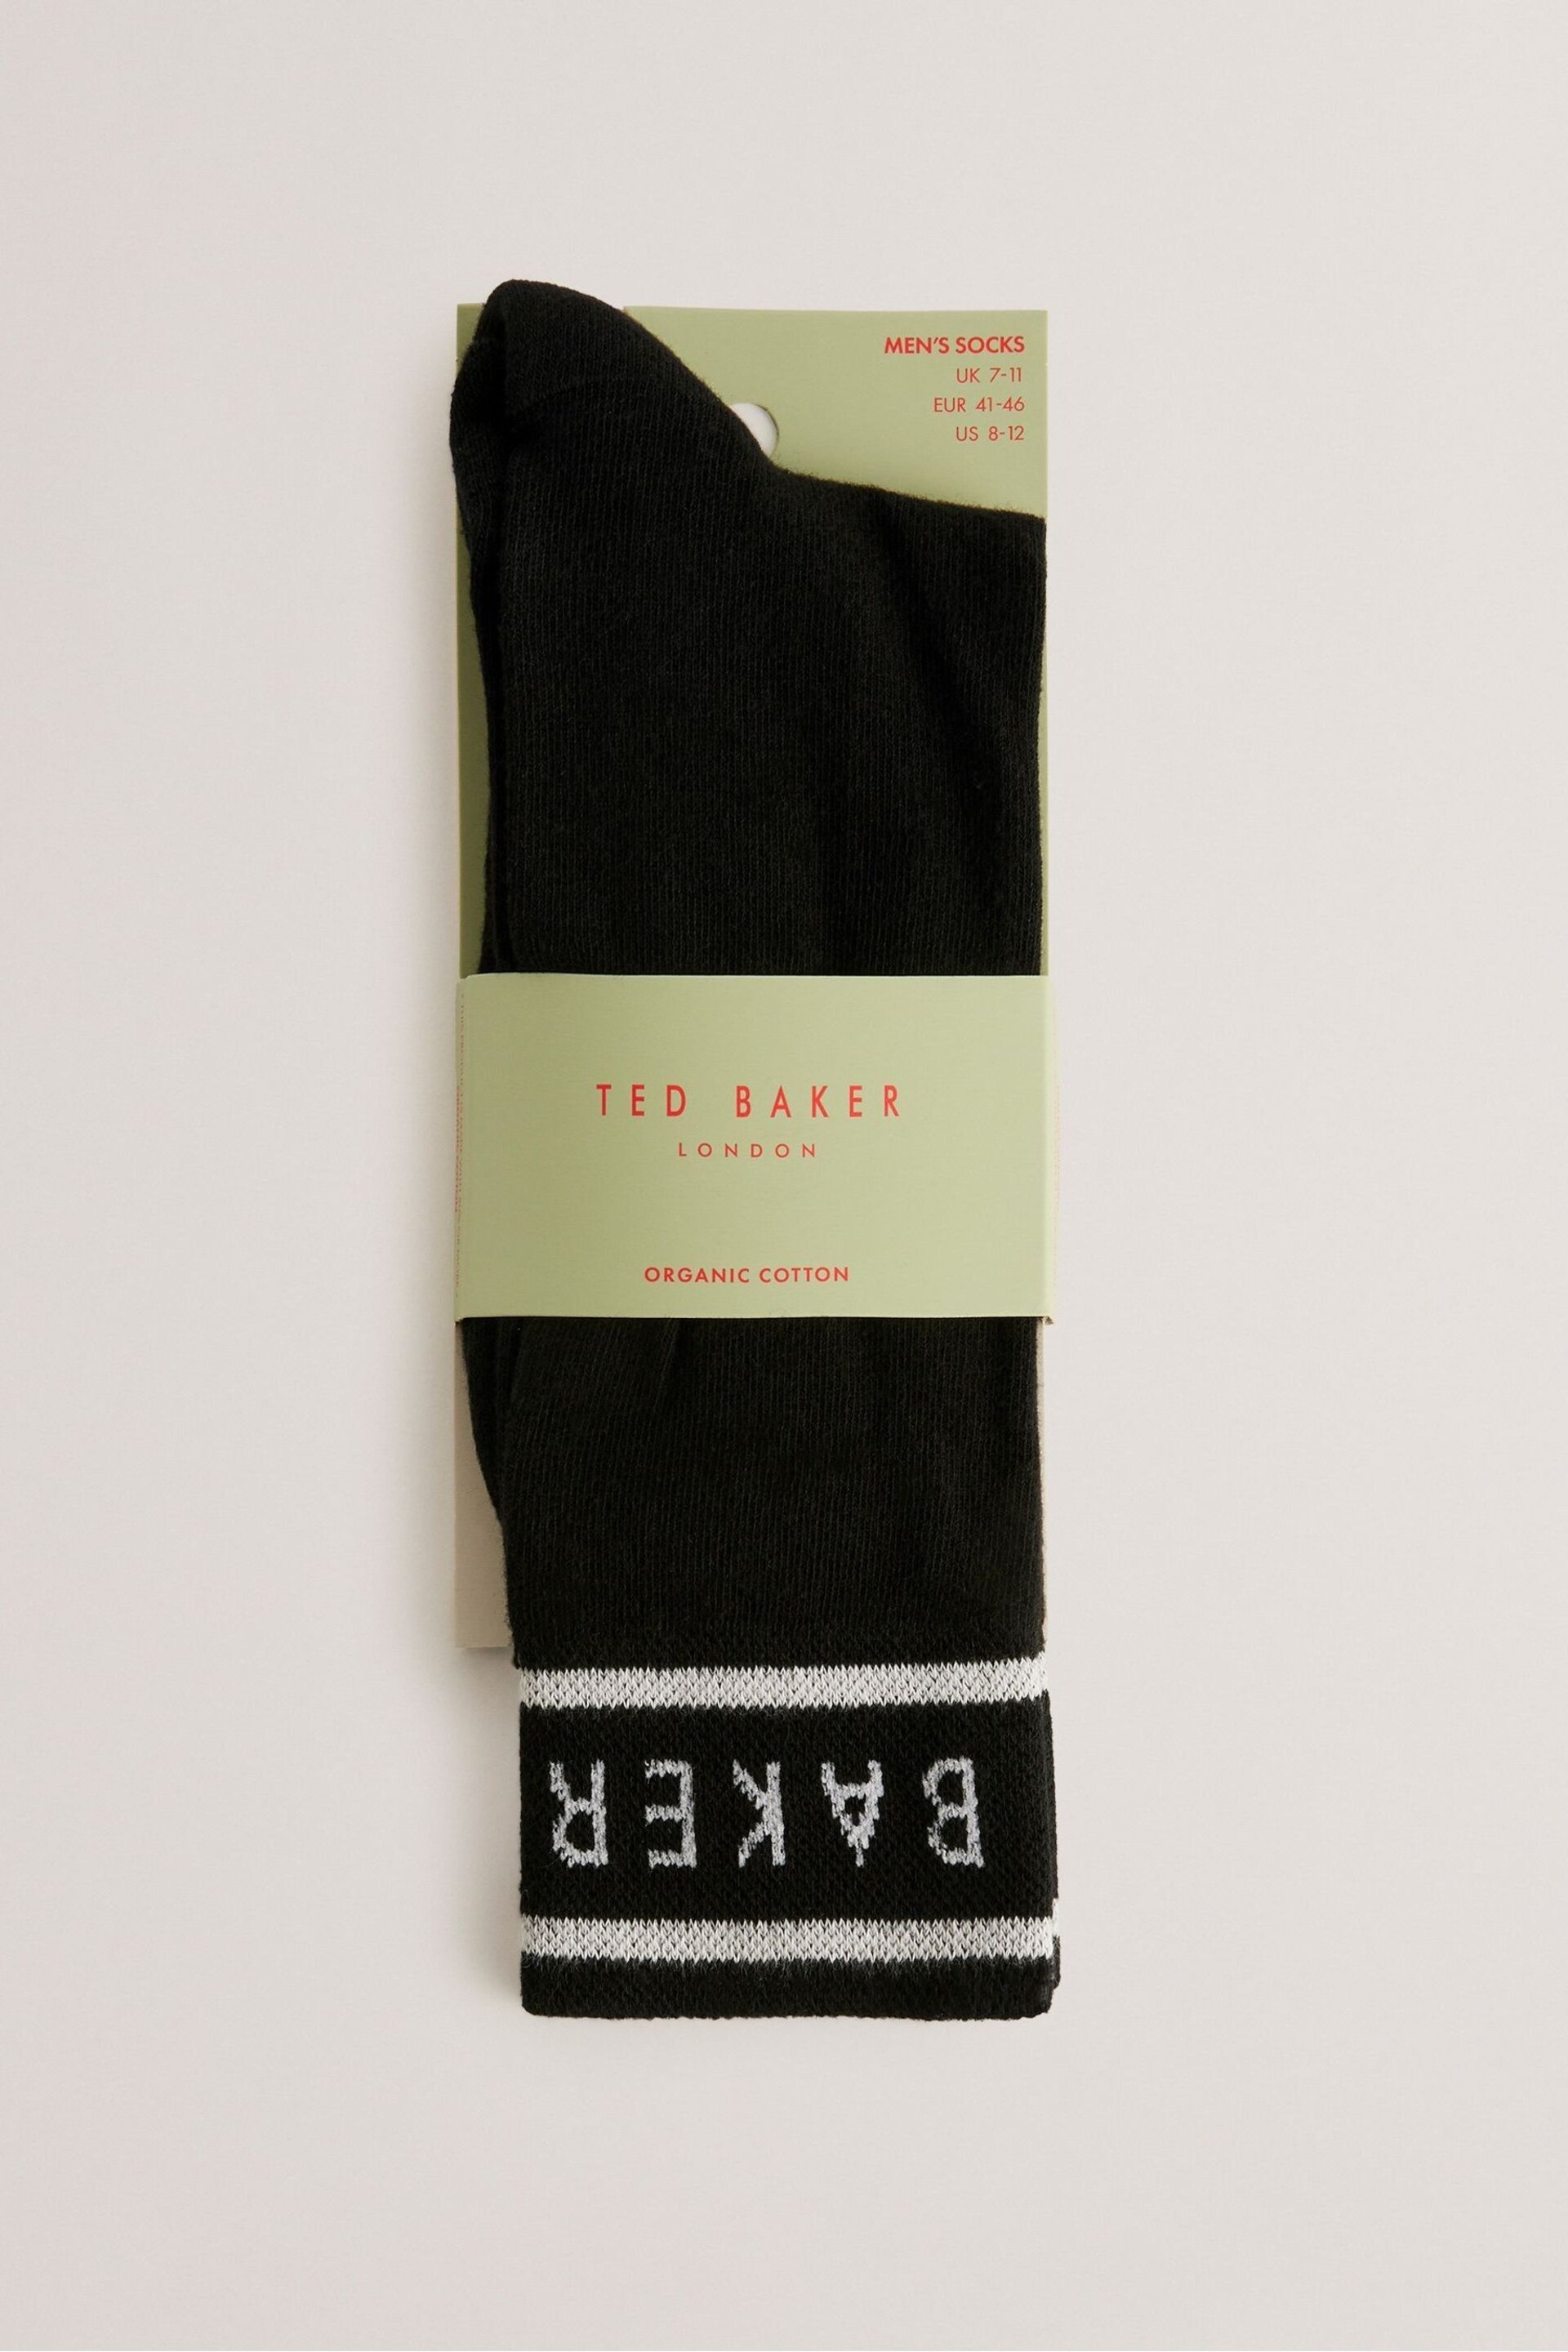 Ted Baker Black Sokkbbb Branded Socks - Image 1 of 3